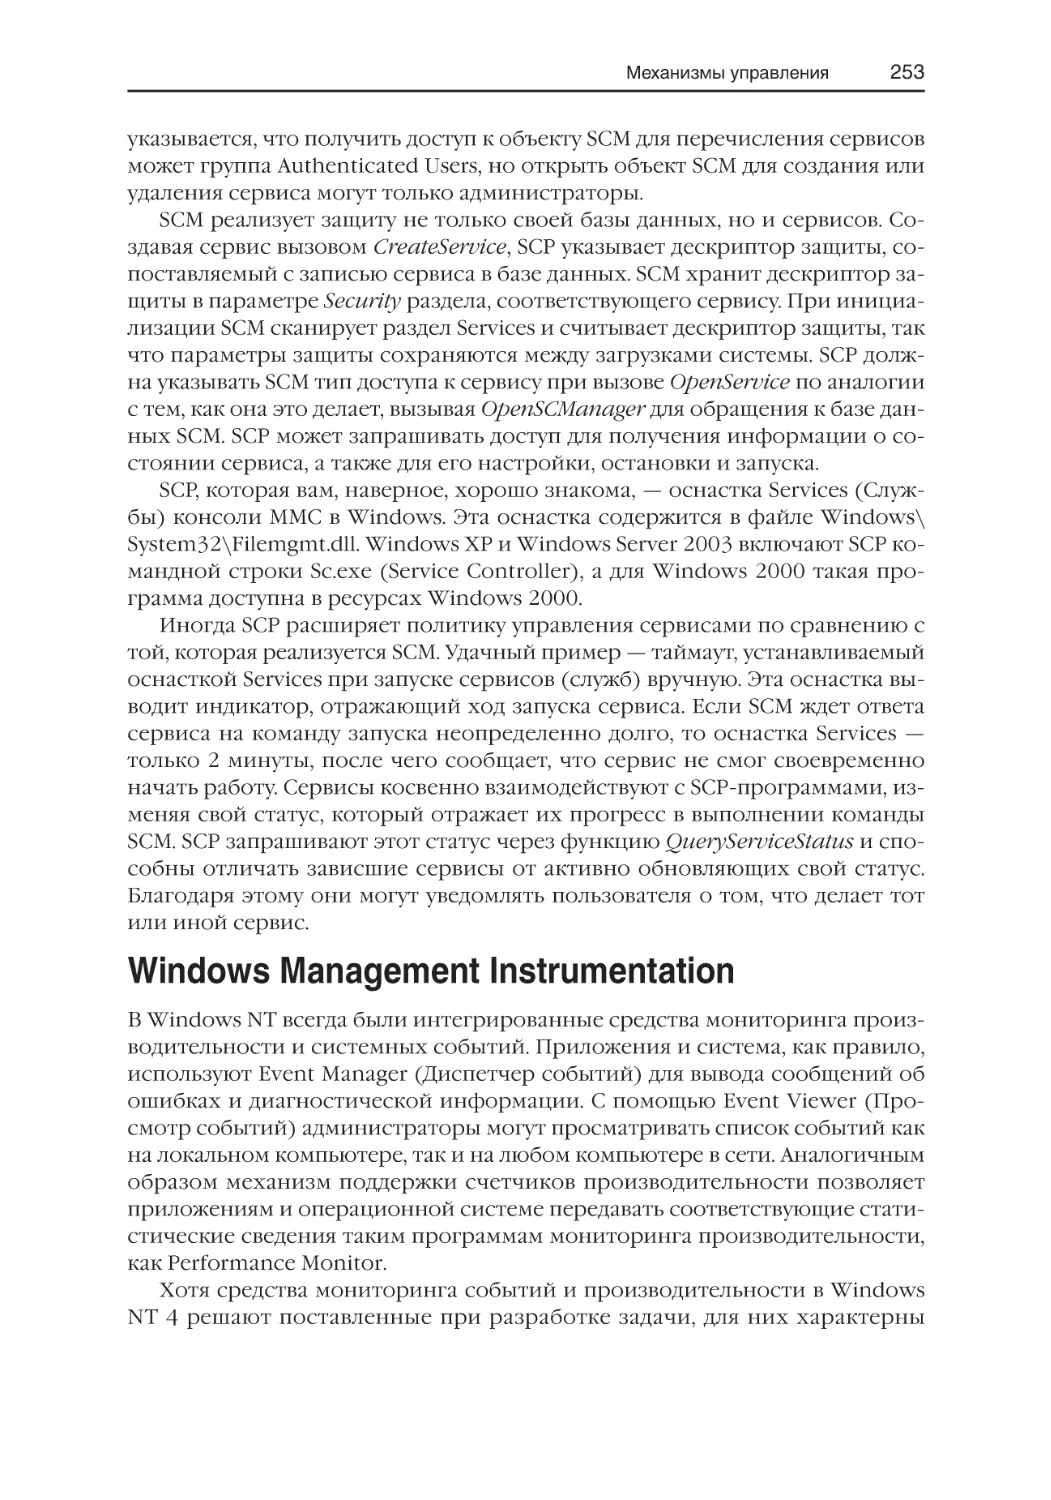 Windows Management Instrumentation